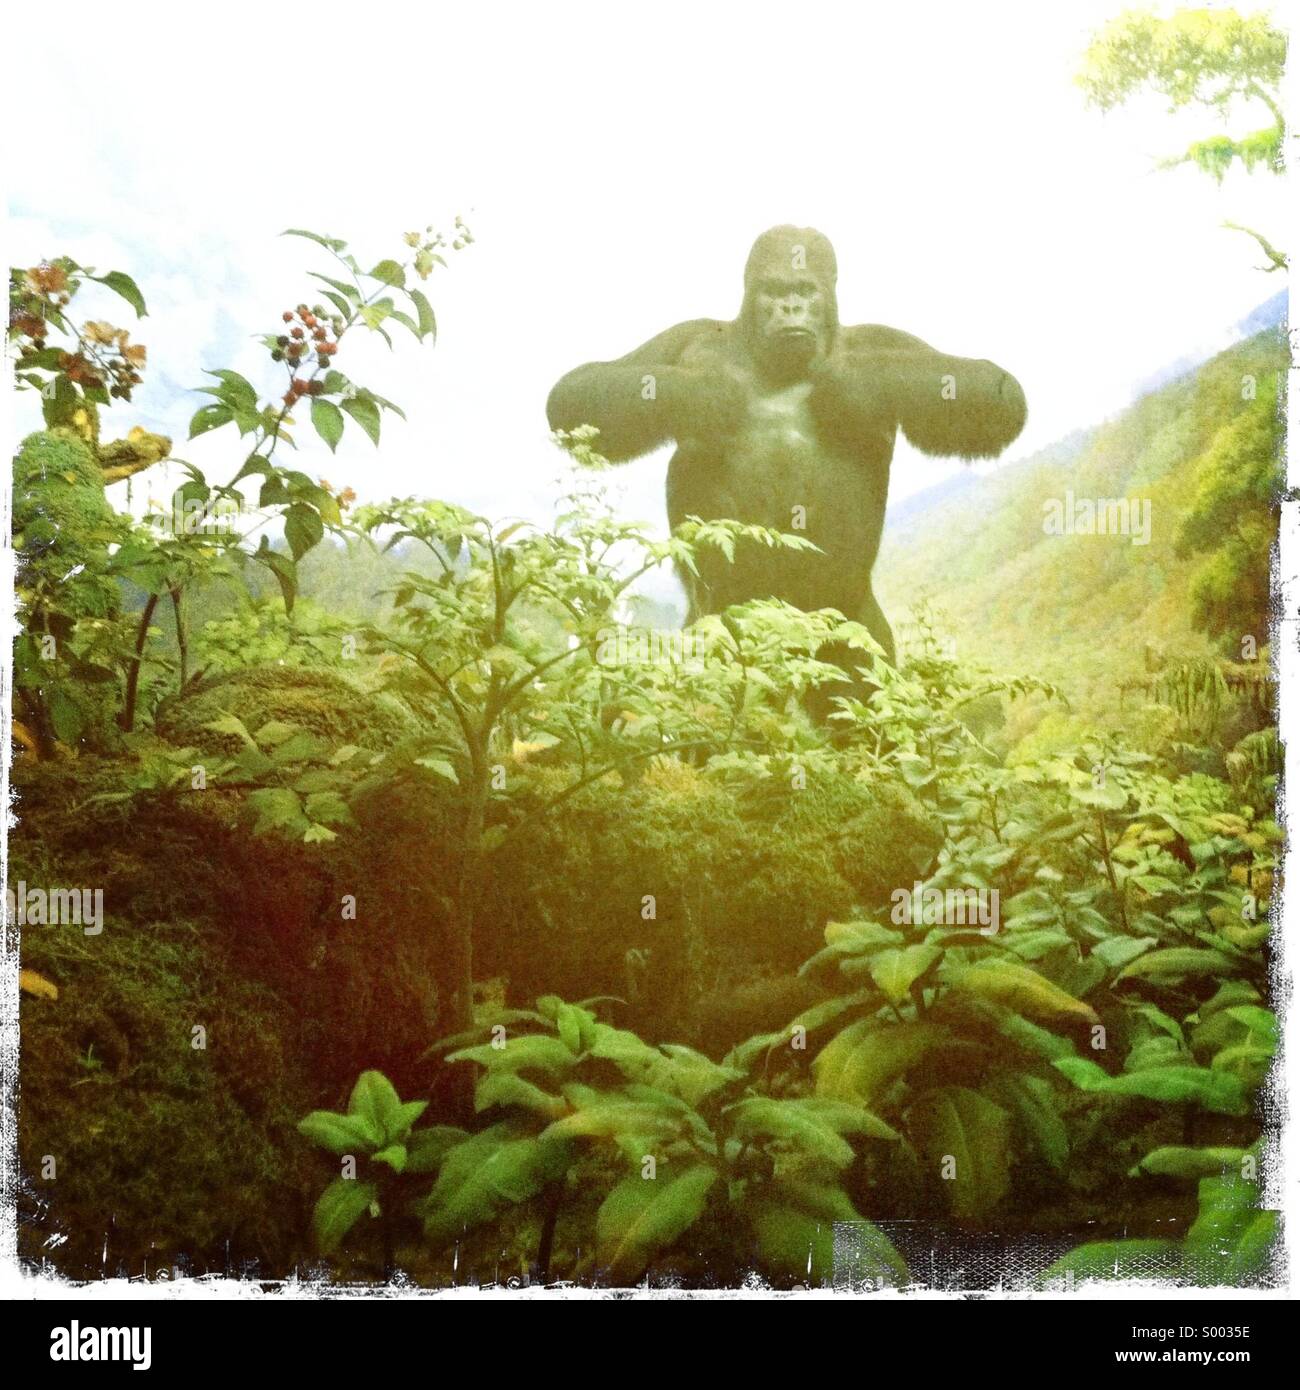 Un gorilla di falso in un ambiente verniciato Foto Stock